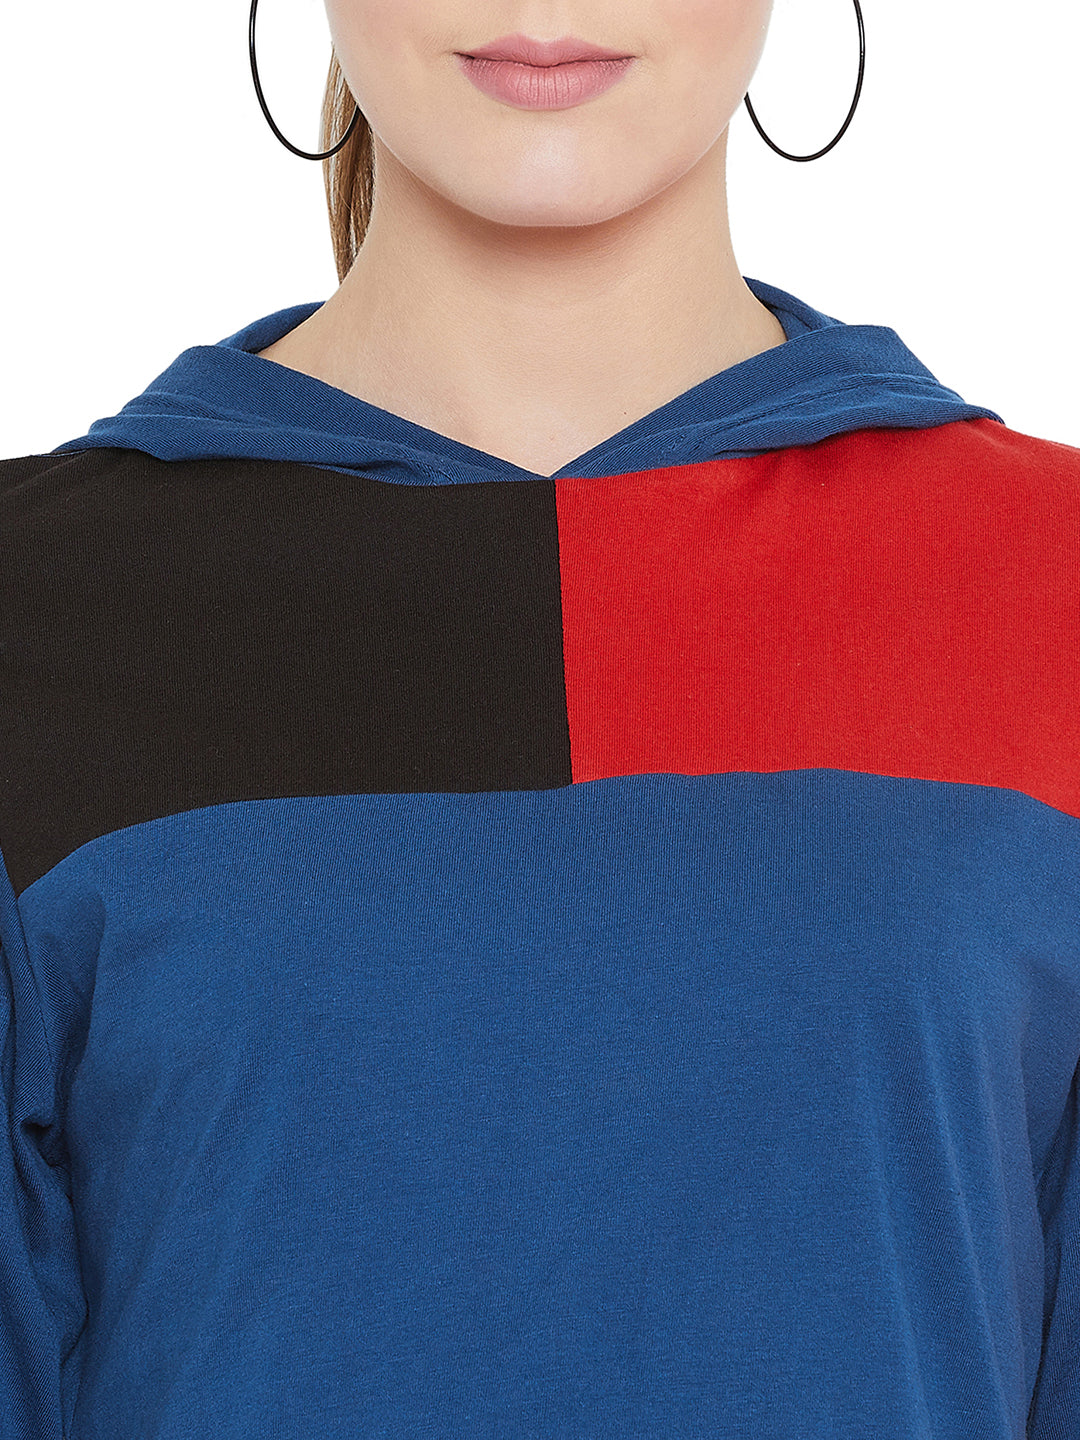 Black/Red Full Sleeves Color Block Hooded Top